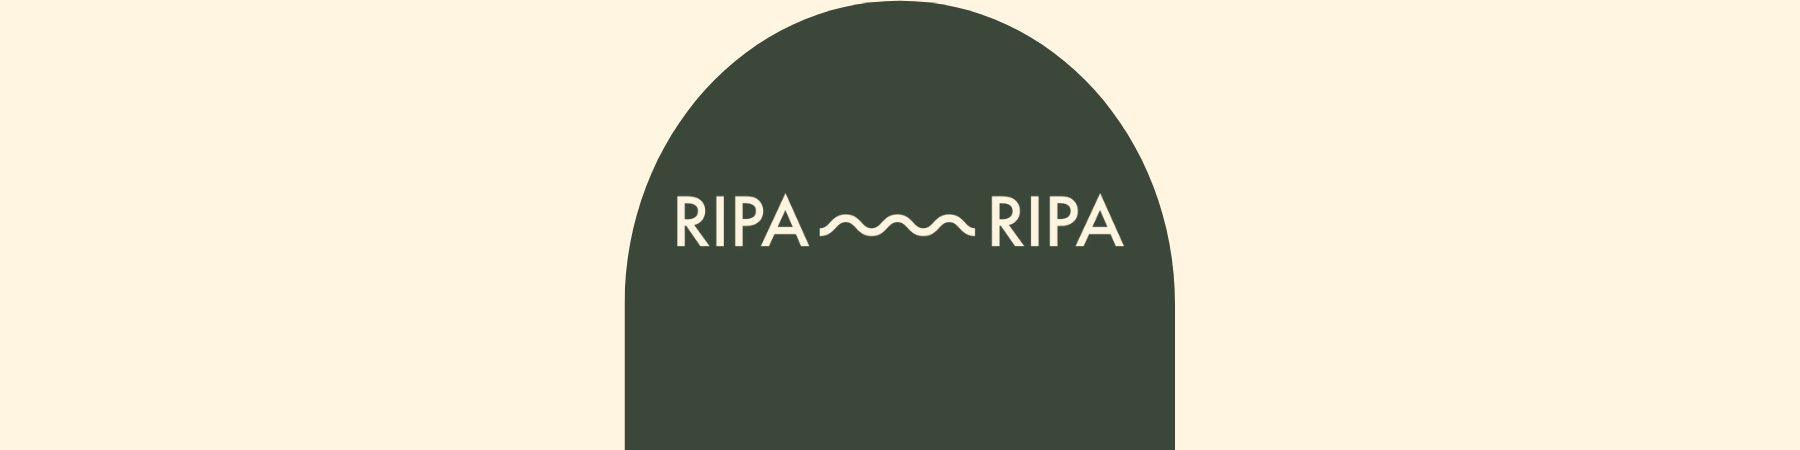 Ripa Ripa at The Local Merchants